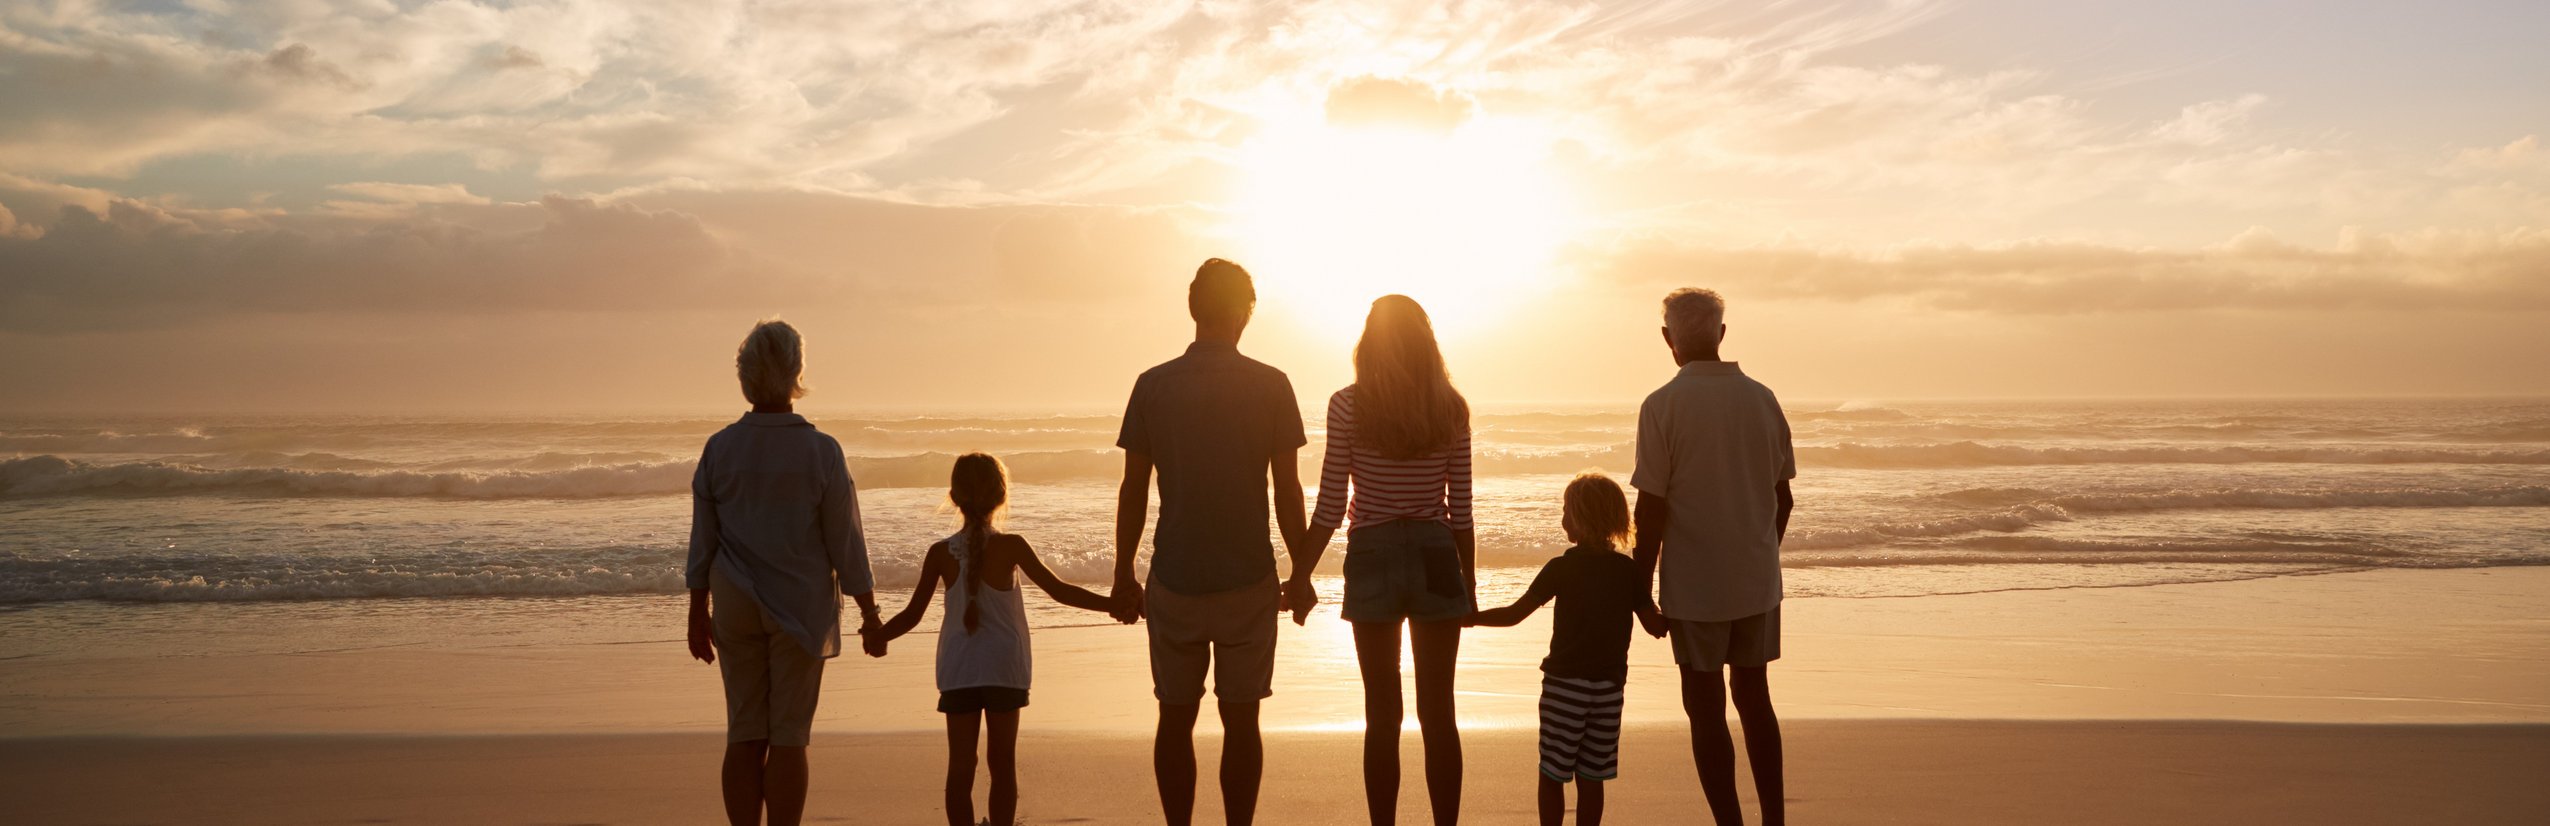 Fernreiseziele mit Kindern im Sommer - Tipps für Fernreisen im Sommer mit Kindern - Mehrgenerationenfamilie am Strand